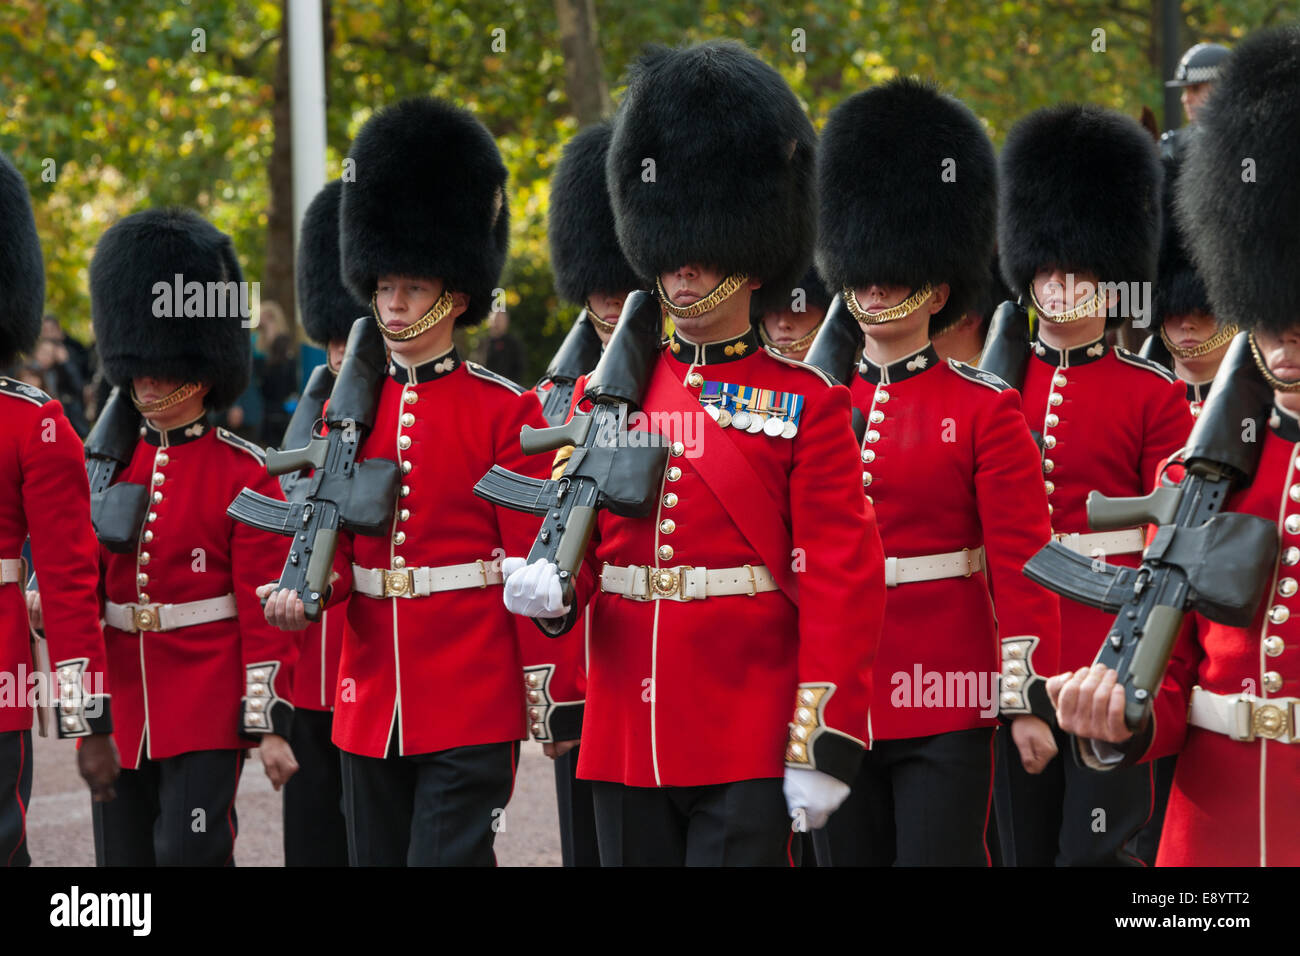 Des soldats les Grenadier Guards marching down the Mall, après la cérémonie de la relève de la garde, Londres, Angleterre Banque D'Images